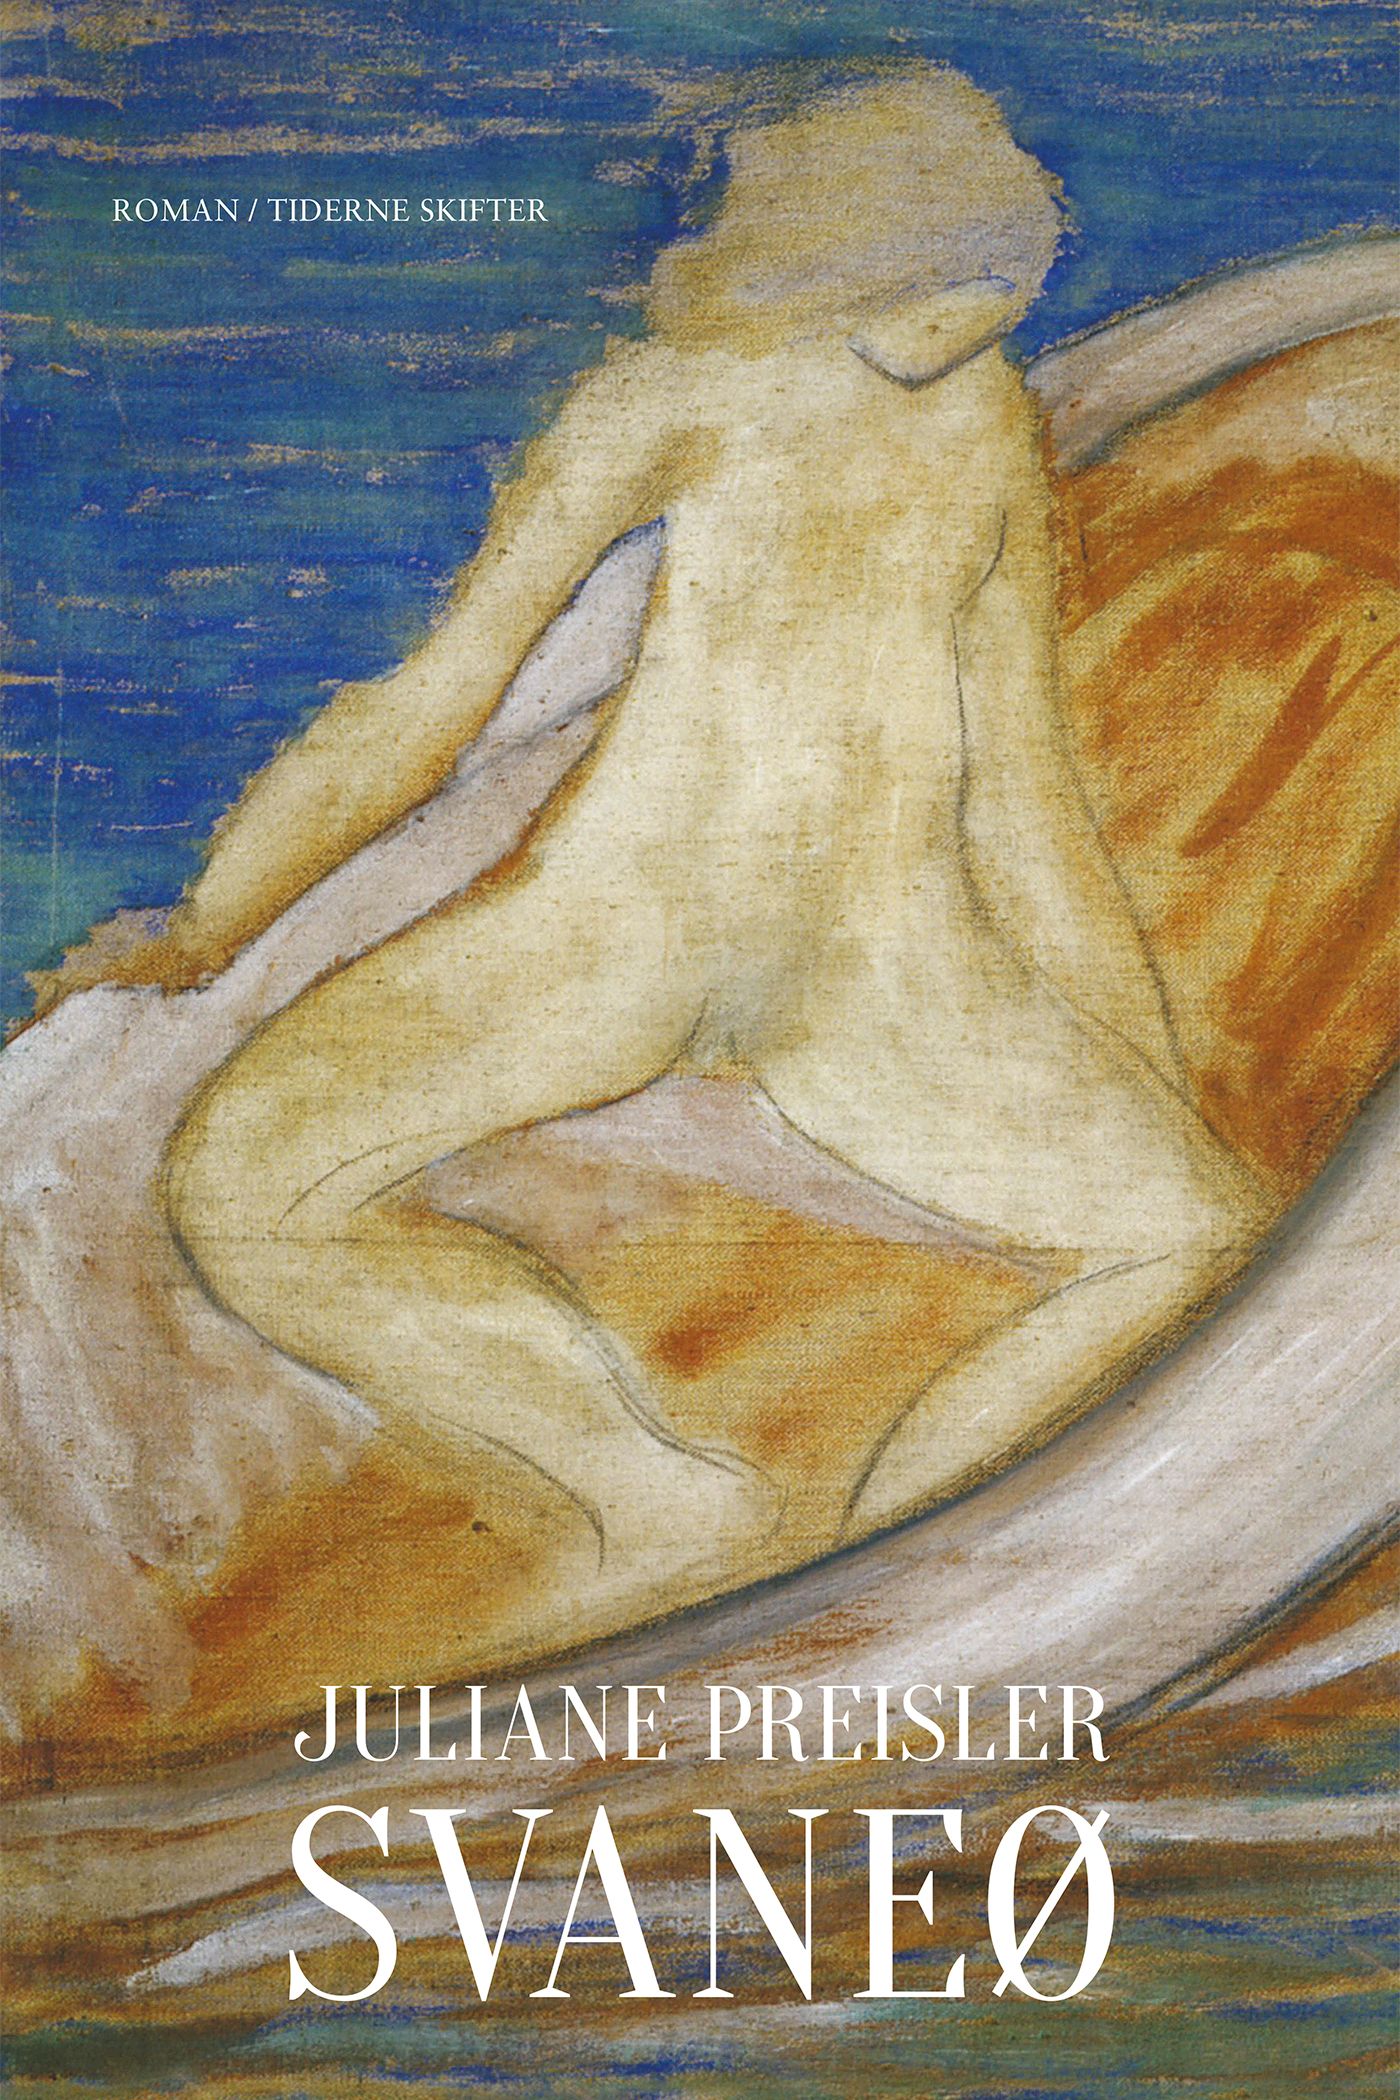 Svaneø, e-bok av Juliane Preisler